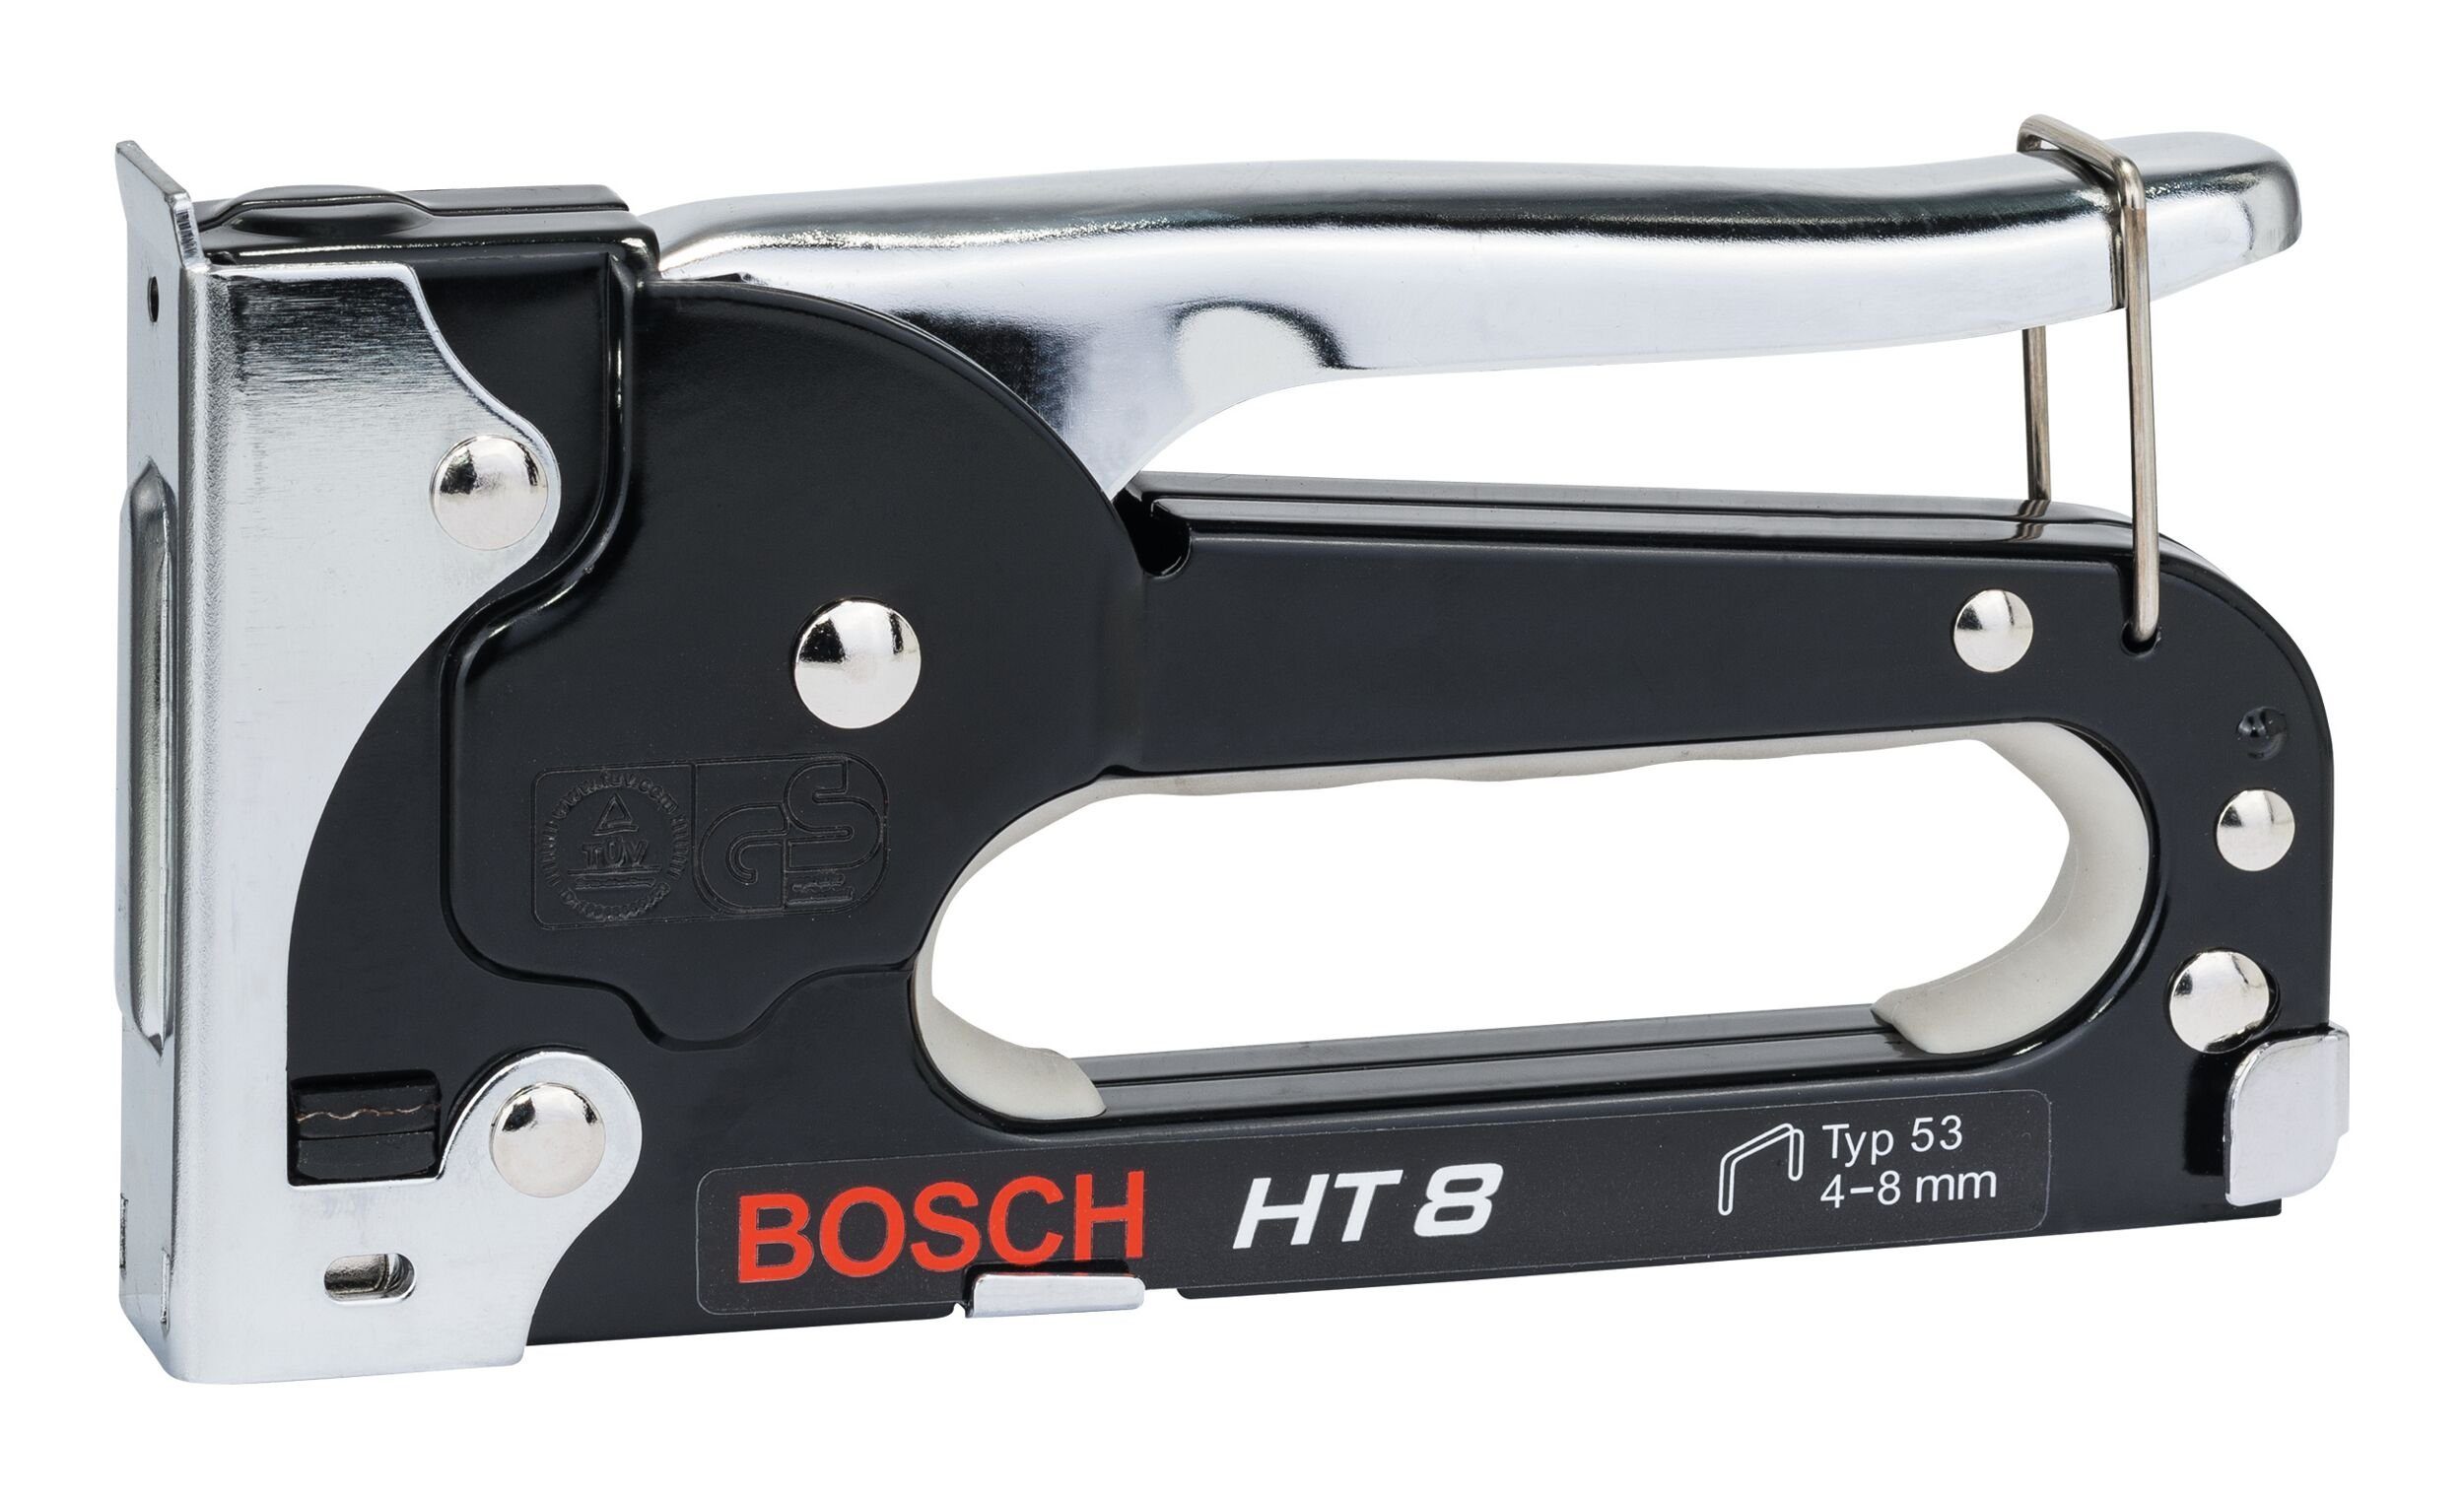 8, HT - Elektro-Tacker Handtacker im Karton Bosch Professional